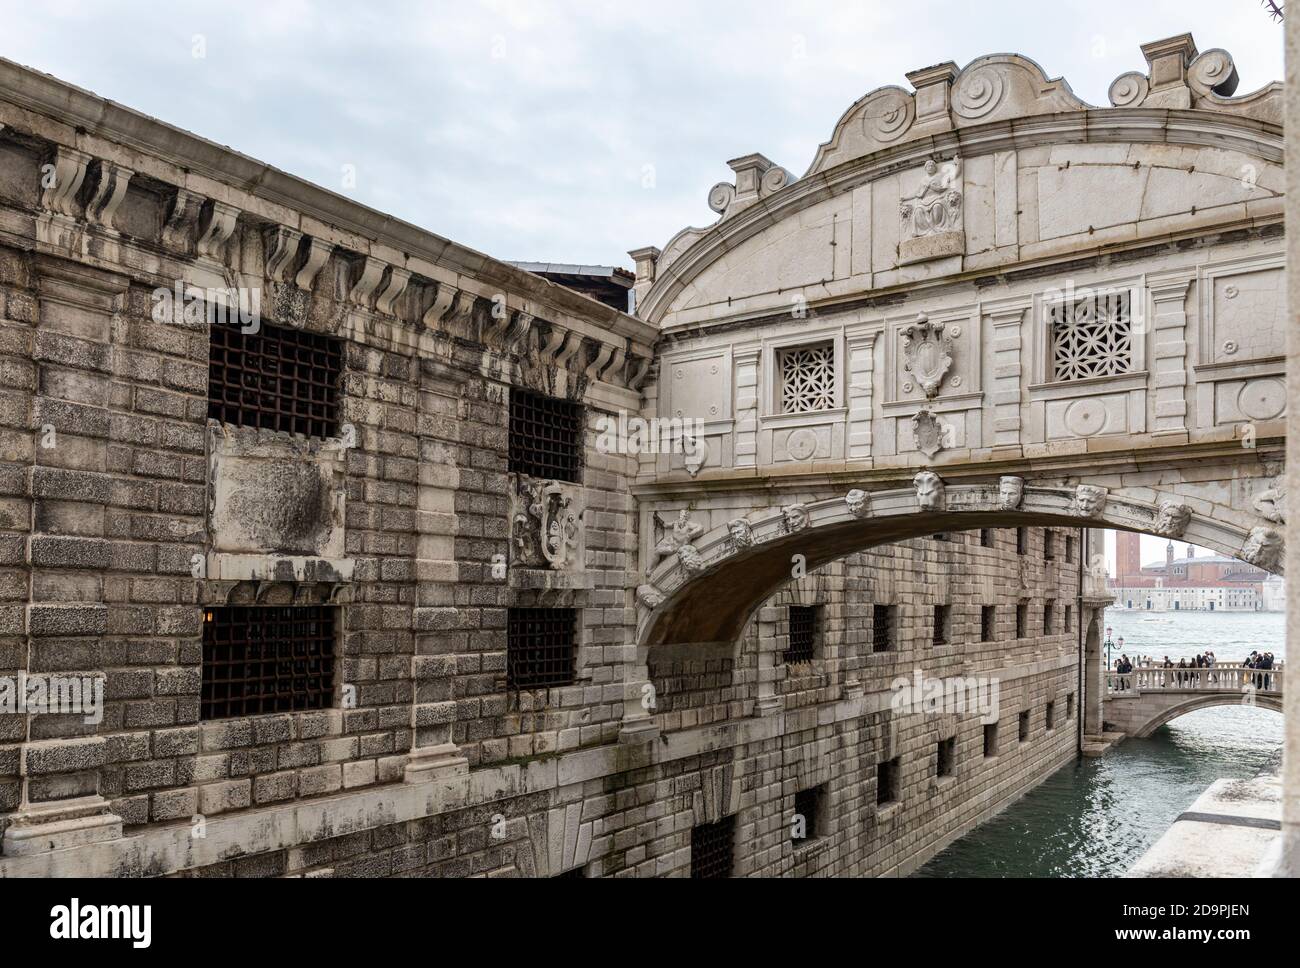 Cerca del “Ponte dei Sospiri” o “Puente de los Suspiros”, un puente mundialmente famoso que conecta el Palacio de los Doges con las Prisiones, San Marco, Venecia, Italia Foto de stock